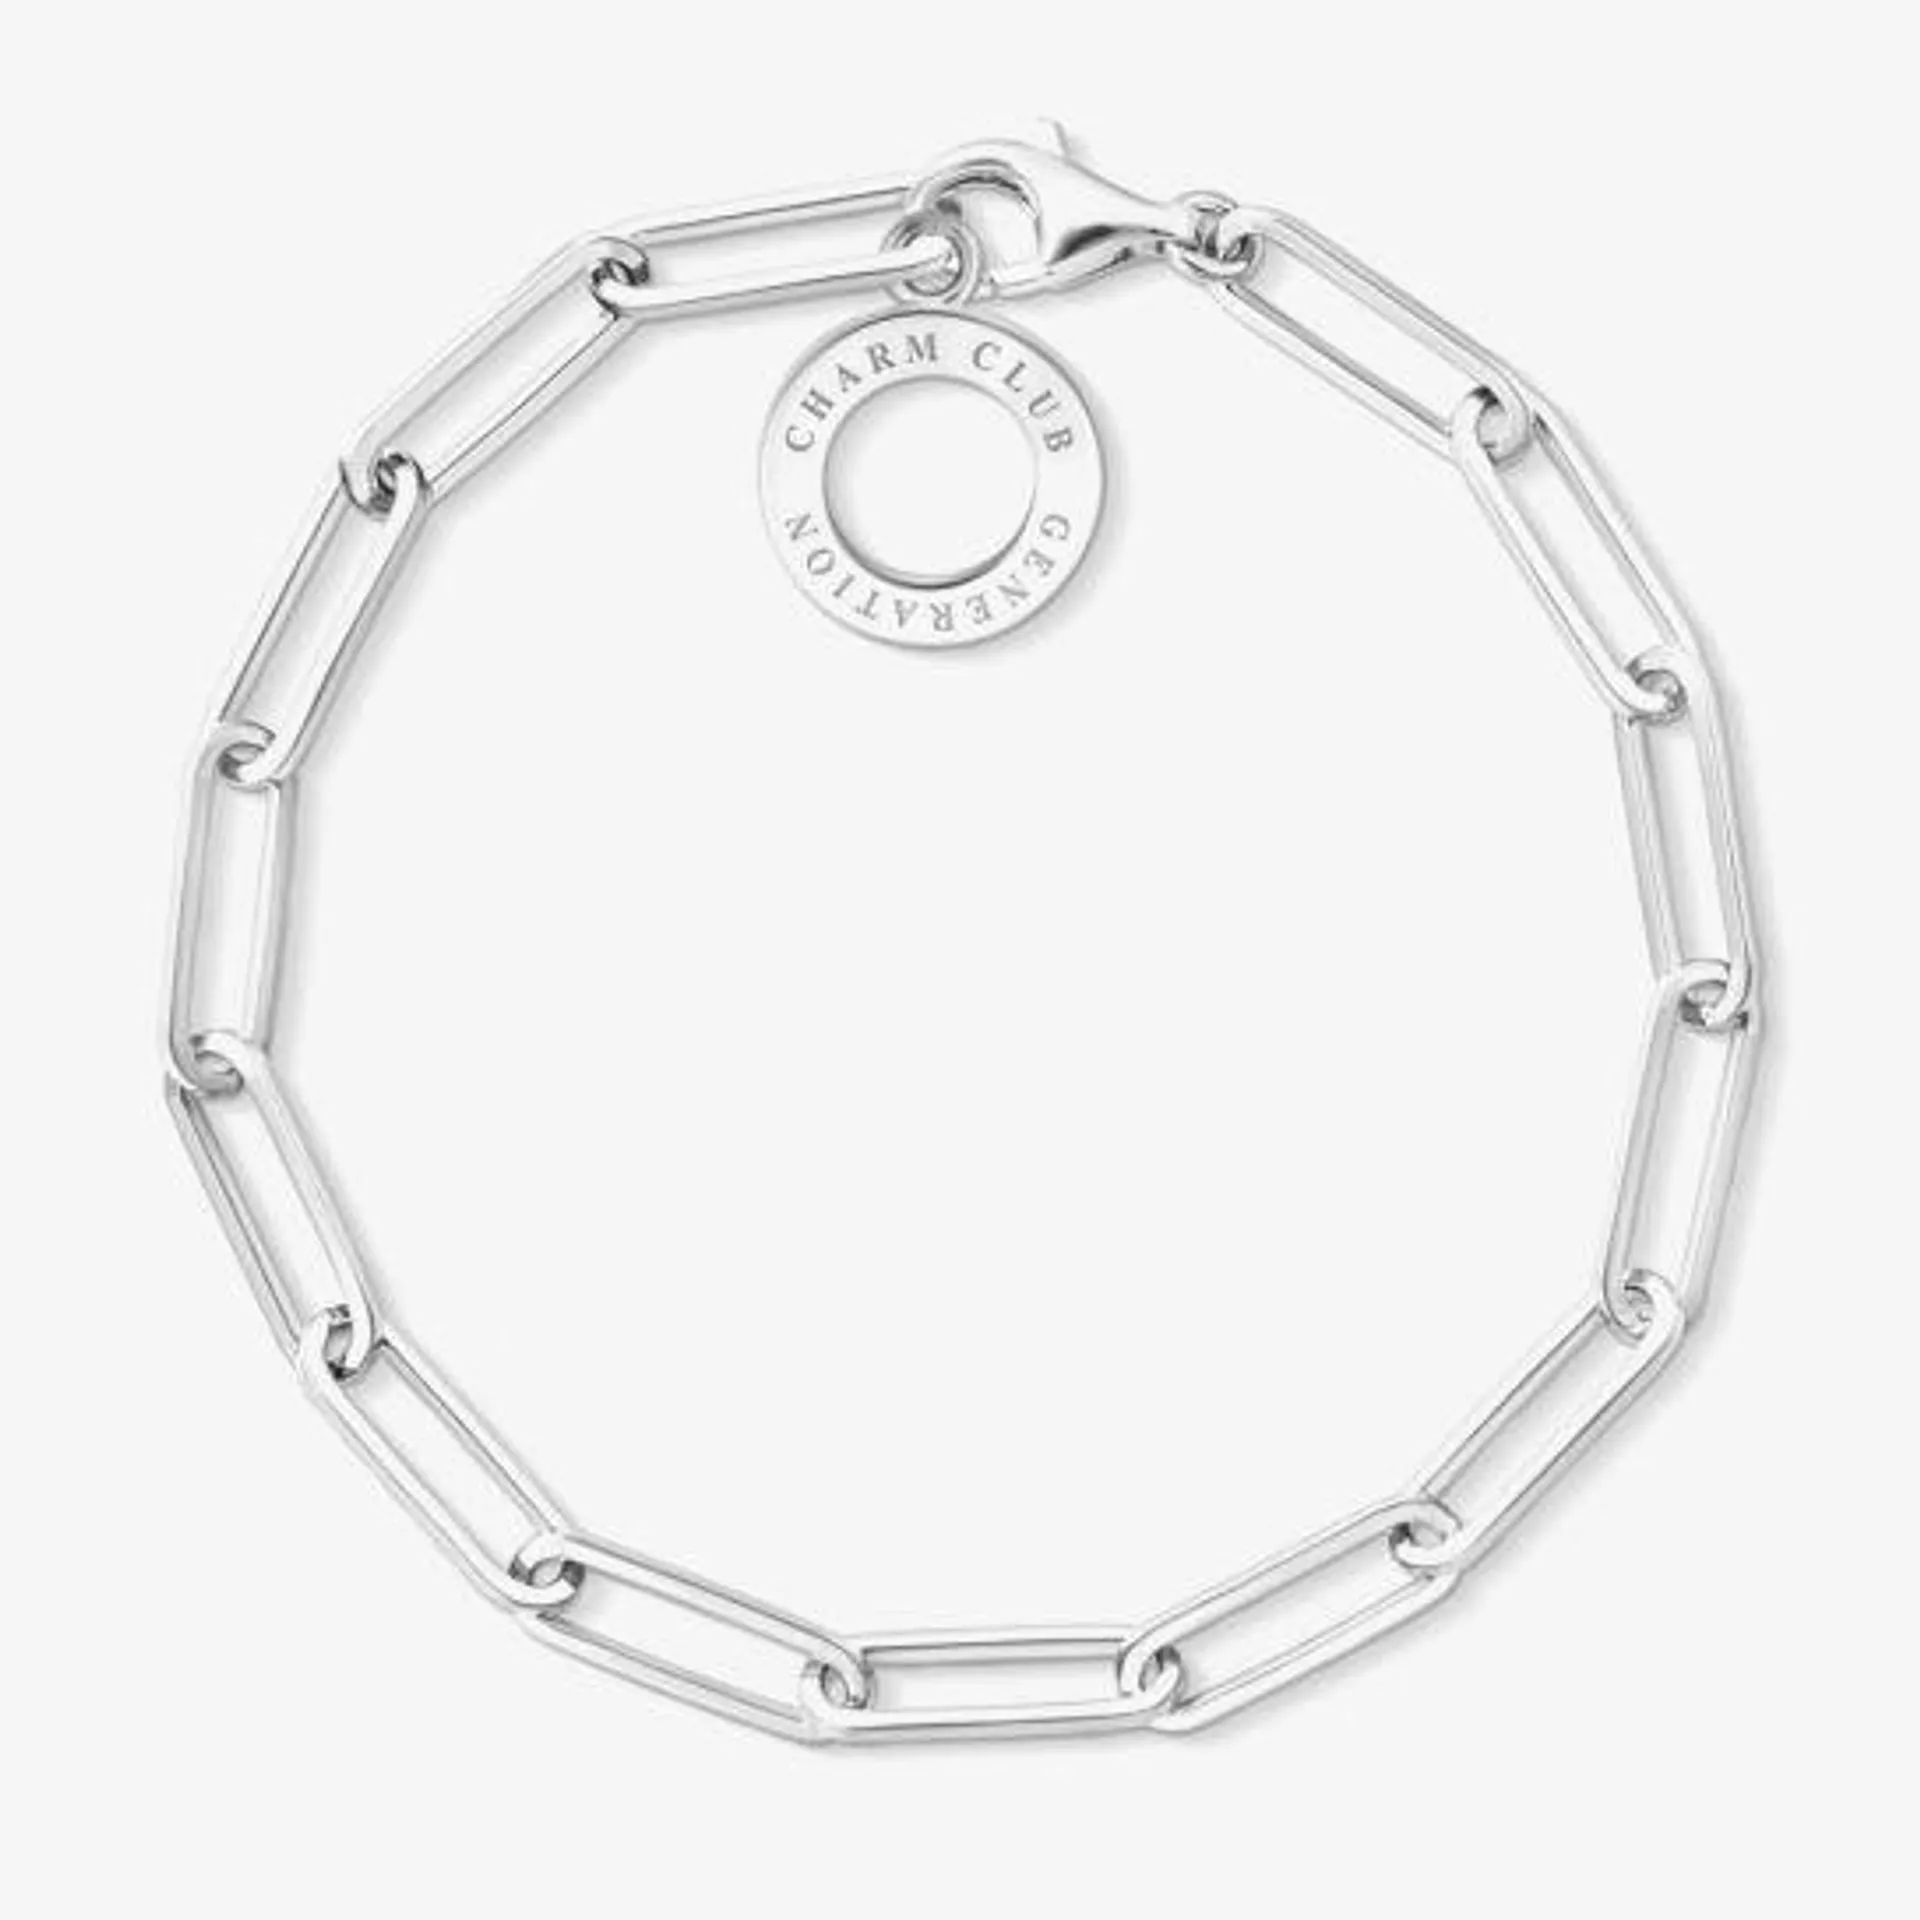 THOMAS SABO Silver Oval Open Link Bracelet X0259-001-21